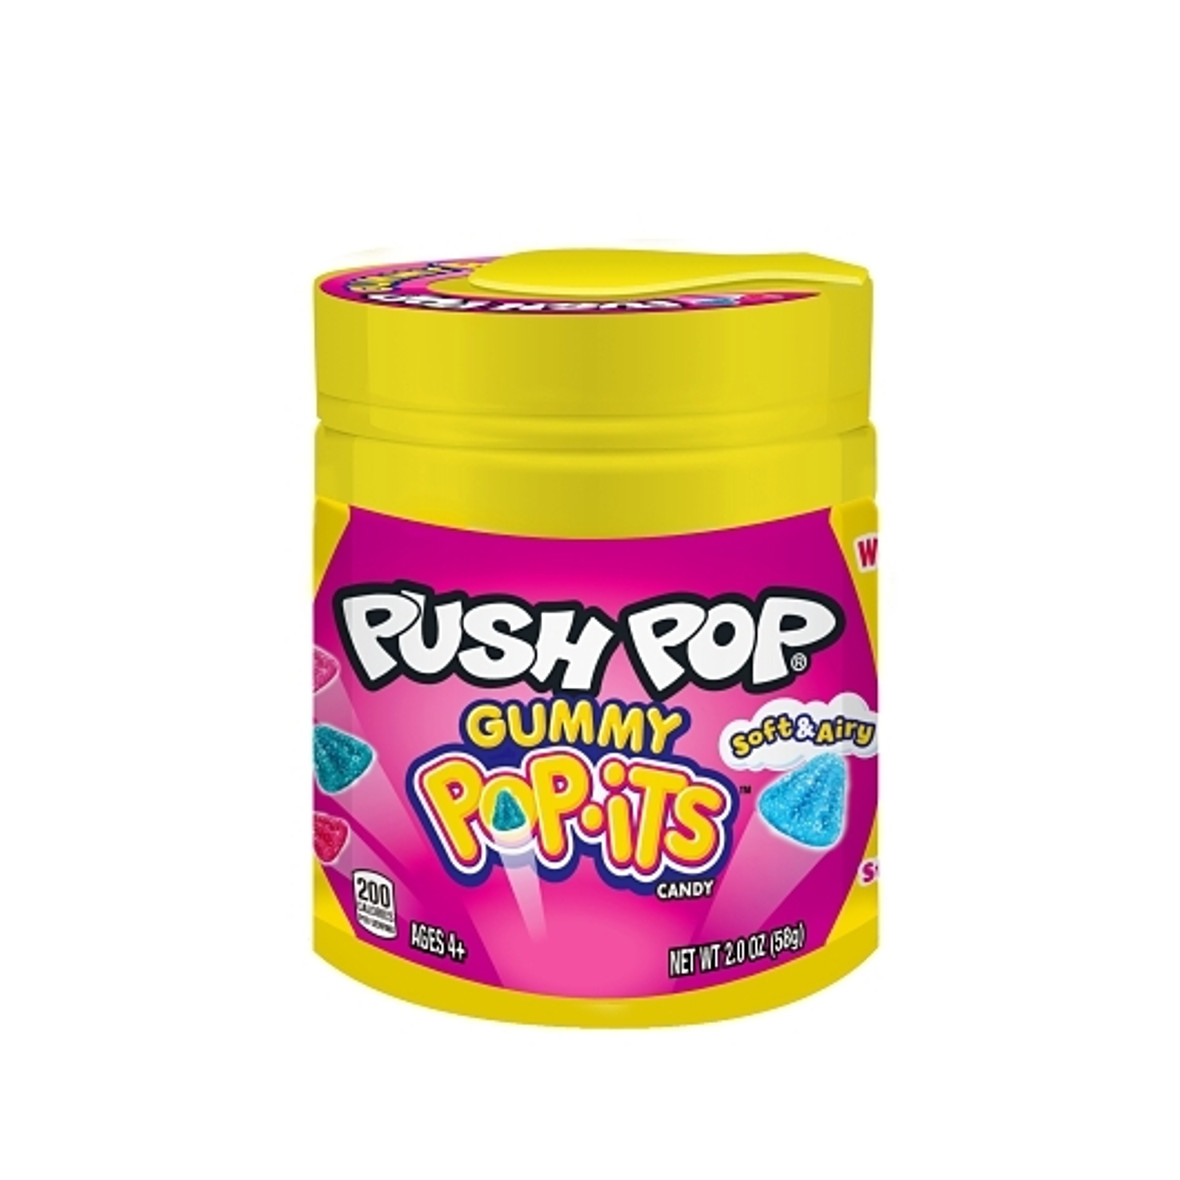 Push Pops Gummy Pop-Its Count Goods, 2 Ounce, 8 Per Box, 16 Per Case